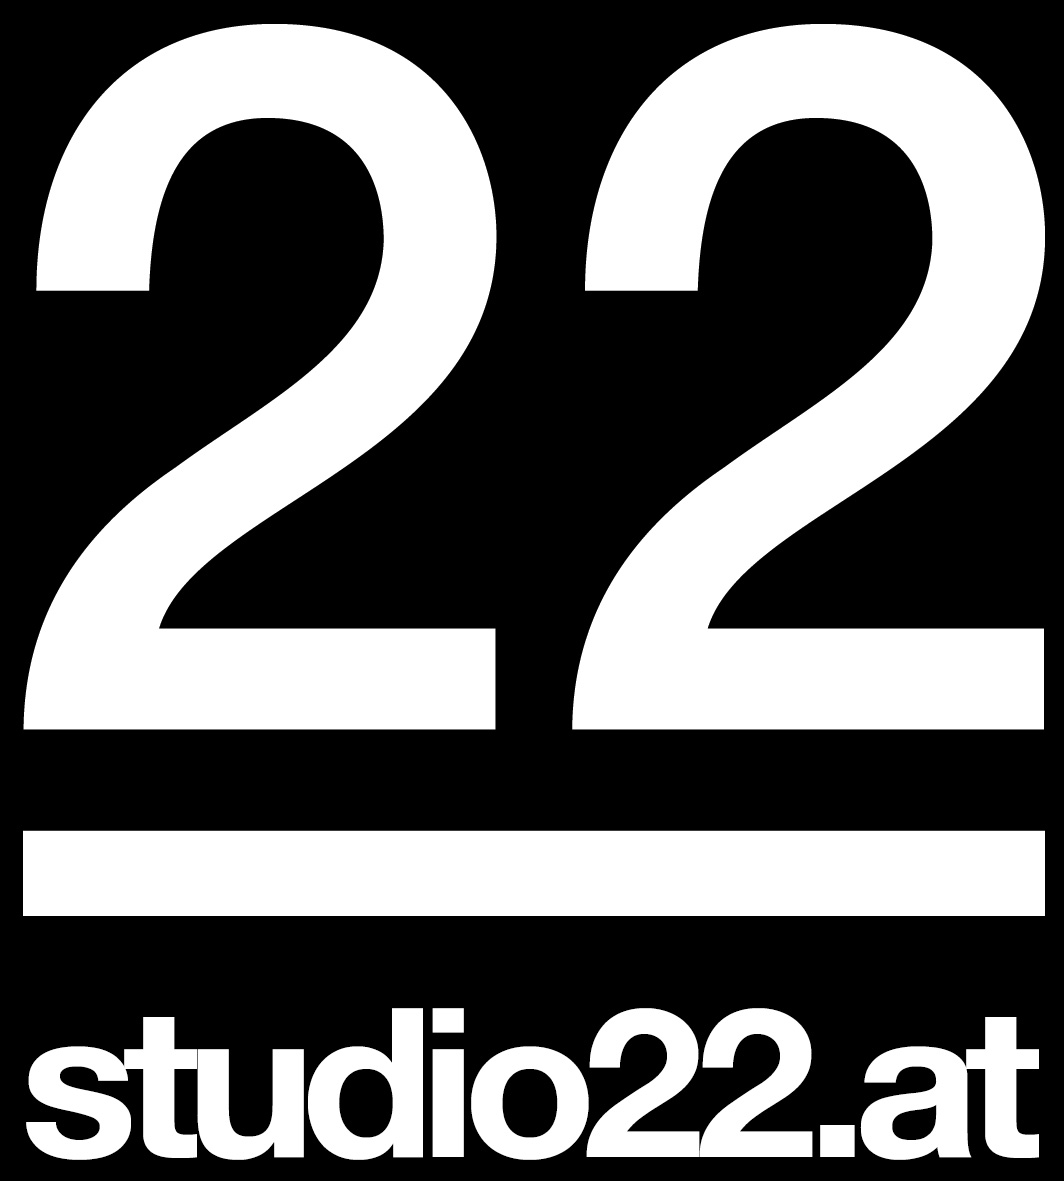 Studio 22